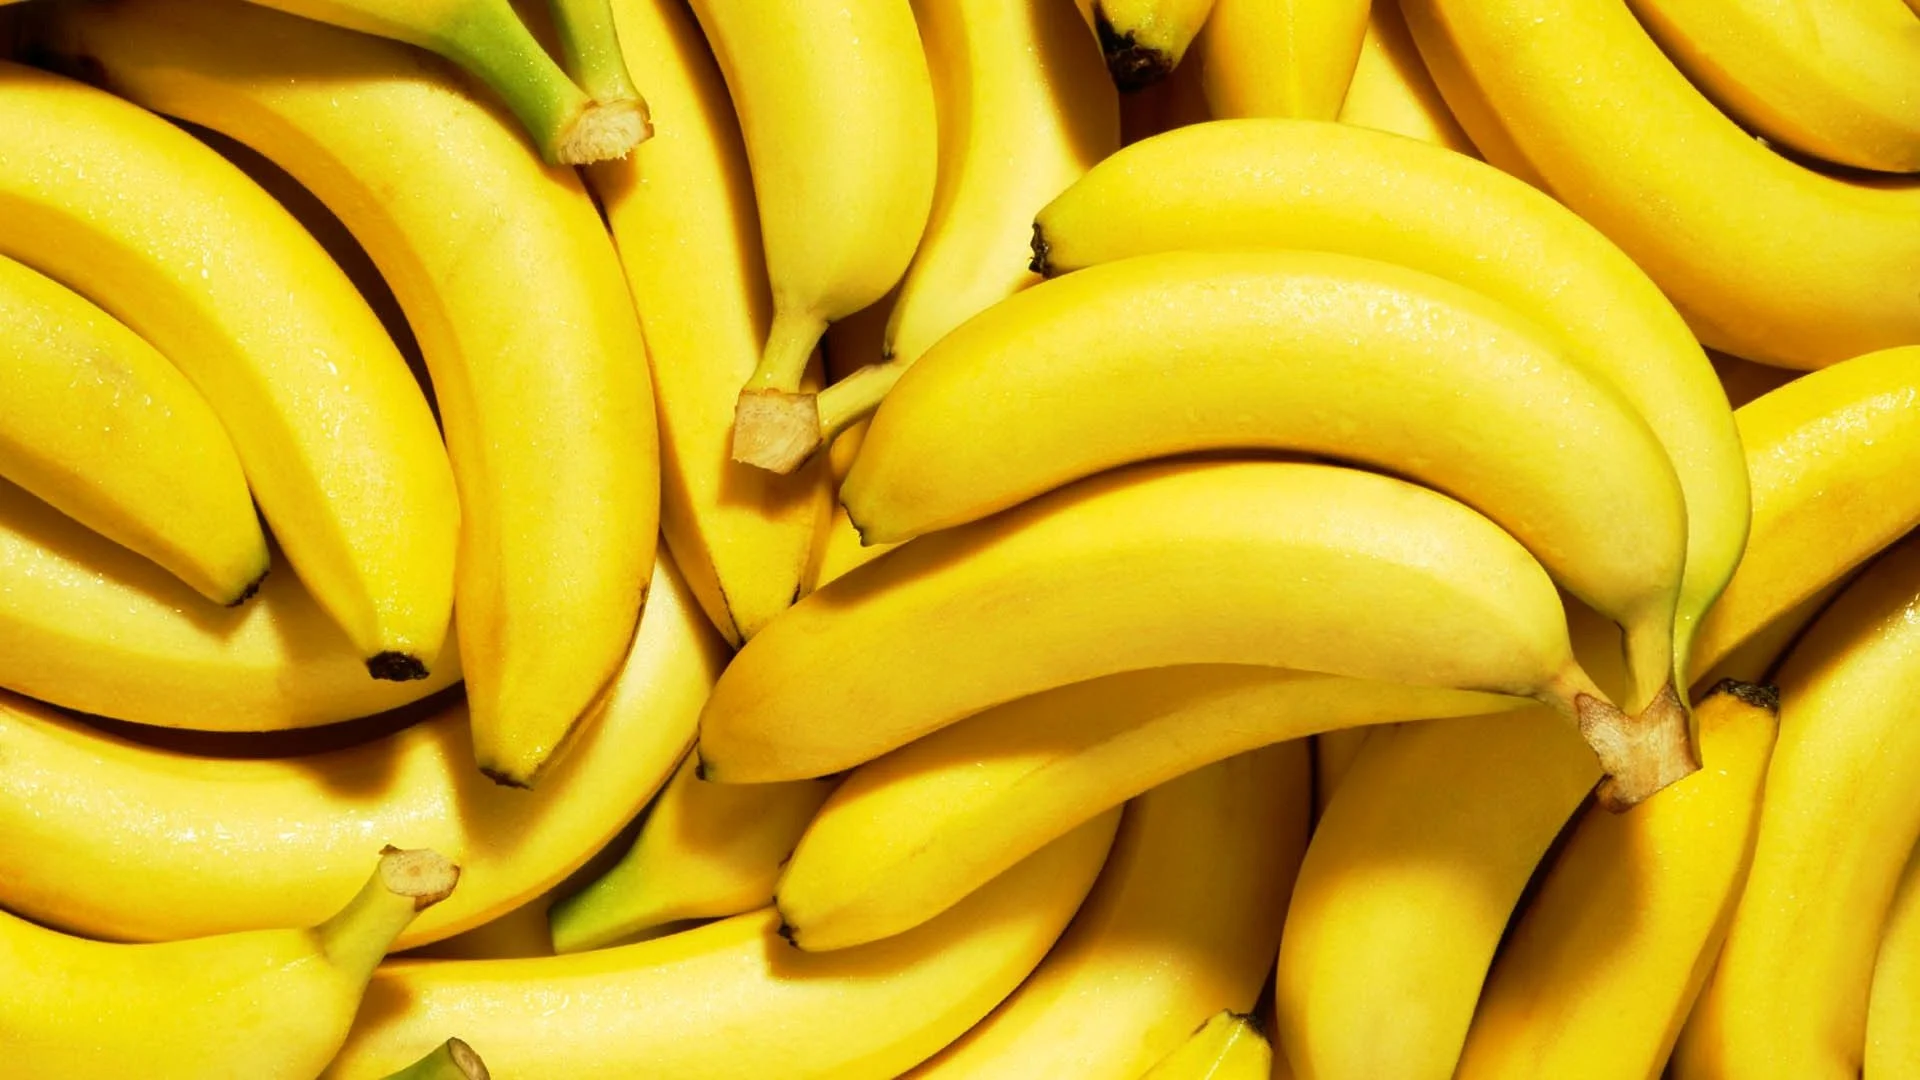 Nutritional Values of Banana 